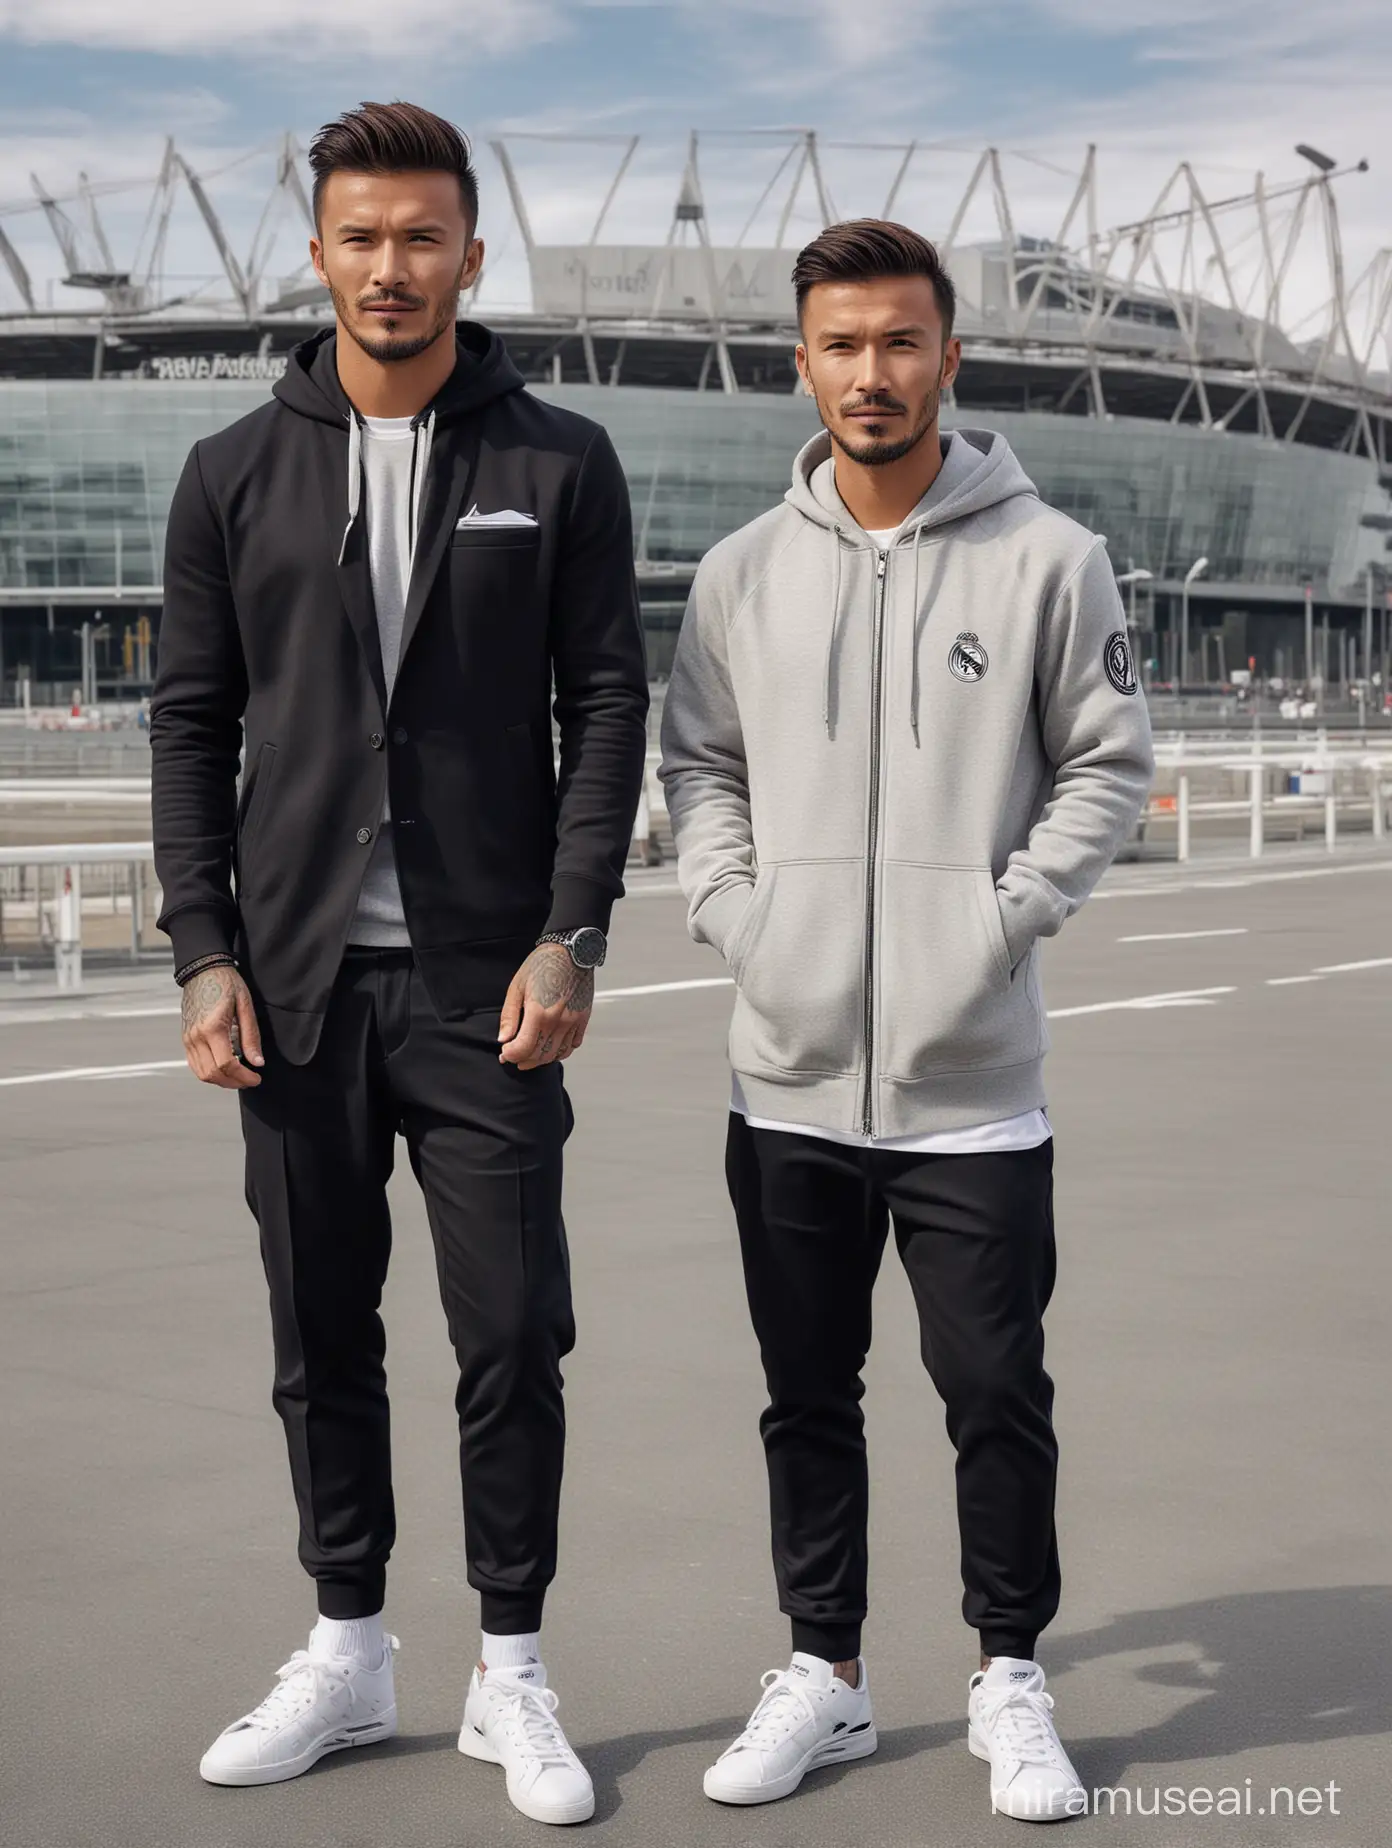 Pria asia berambut pendek memakai hoodie sepatu kets berfoto bersama David Beckham memakai jas, latar belakang stadion real madrid, ultra hd,800 lens,detail